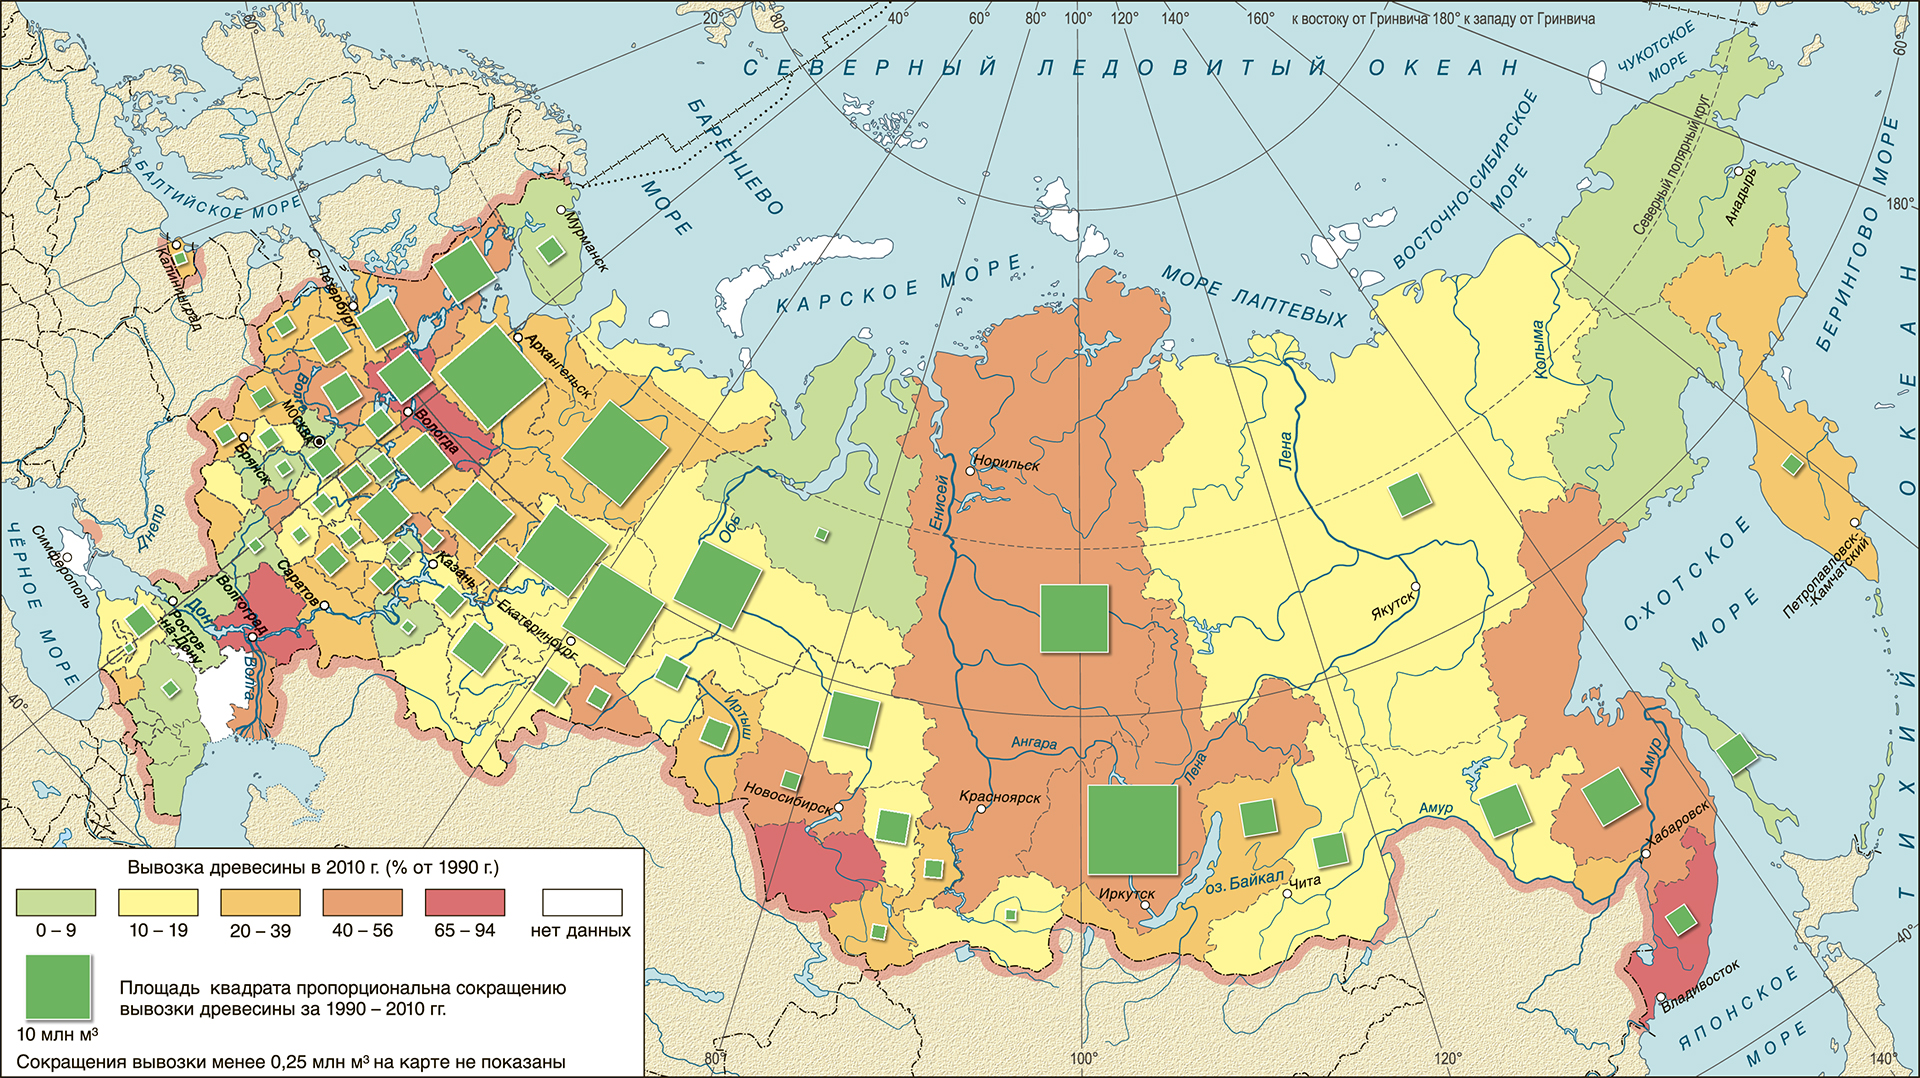  Динамика вывозки древесины в регионах России, 1990–2010 гг. 